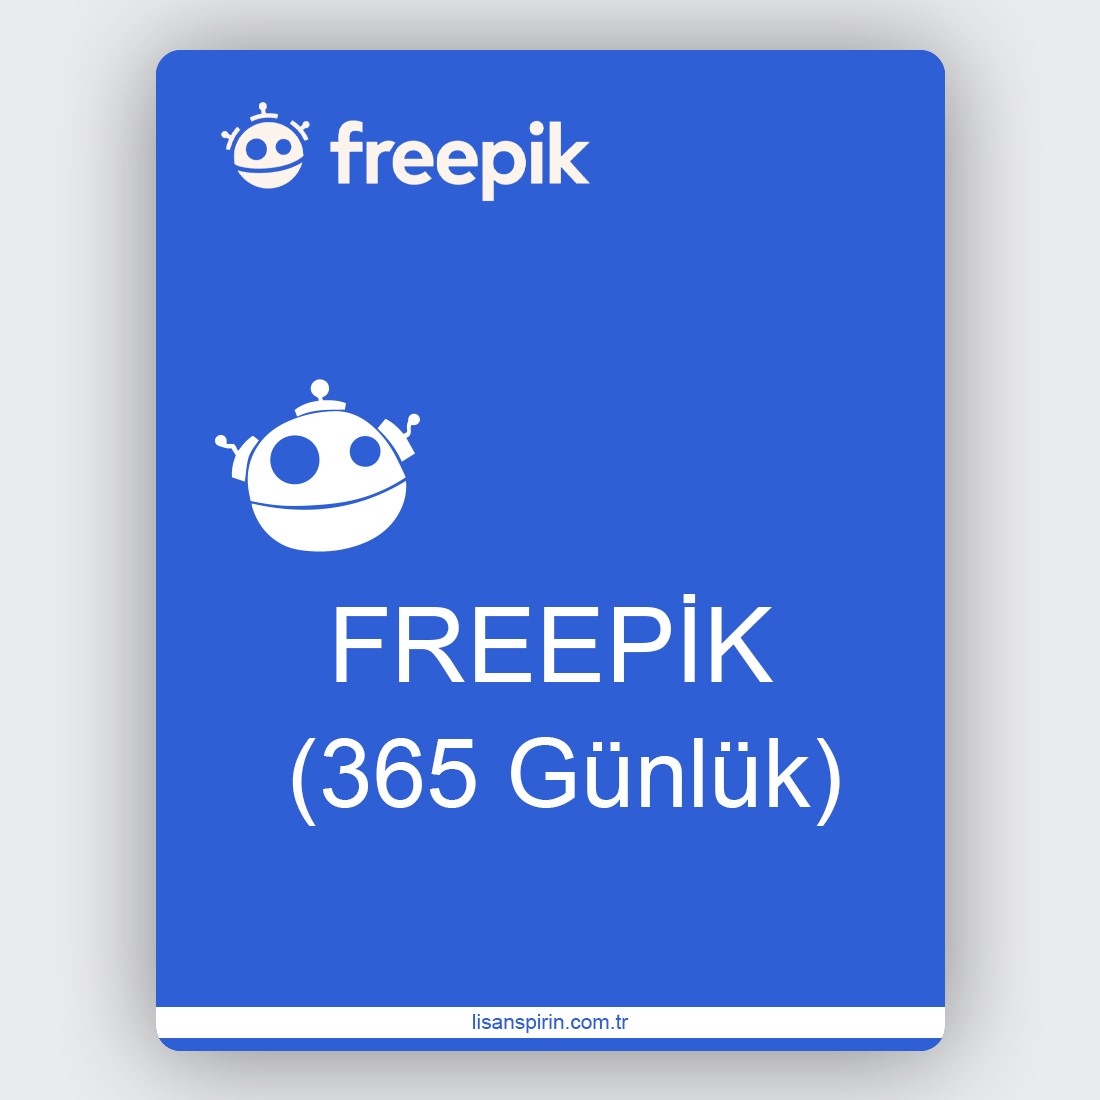 Freepik Premium (365 Gün)